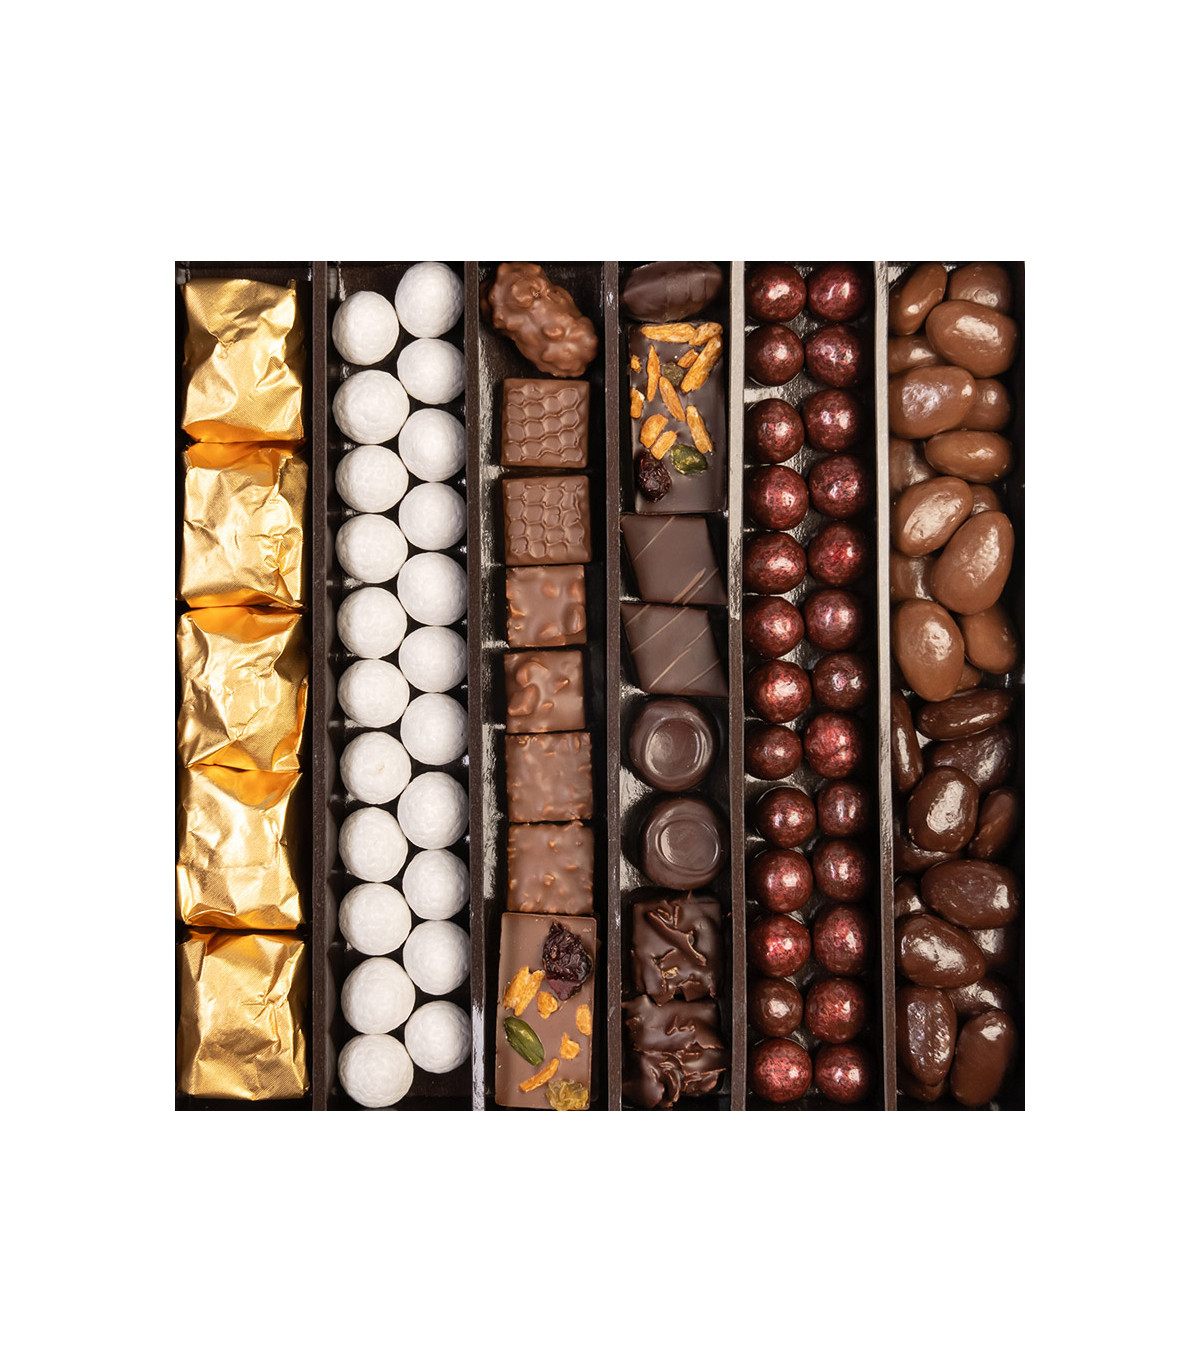 Cadeau noël chocolat - Cadeau chocolat de noël D'lys couleurs